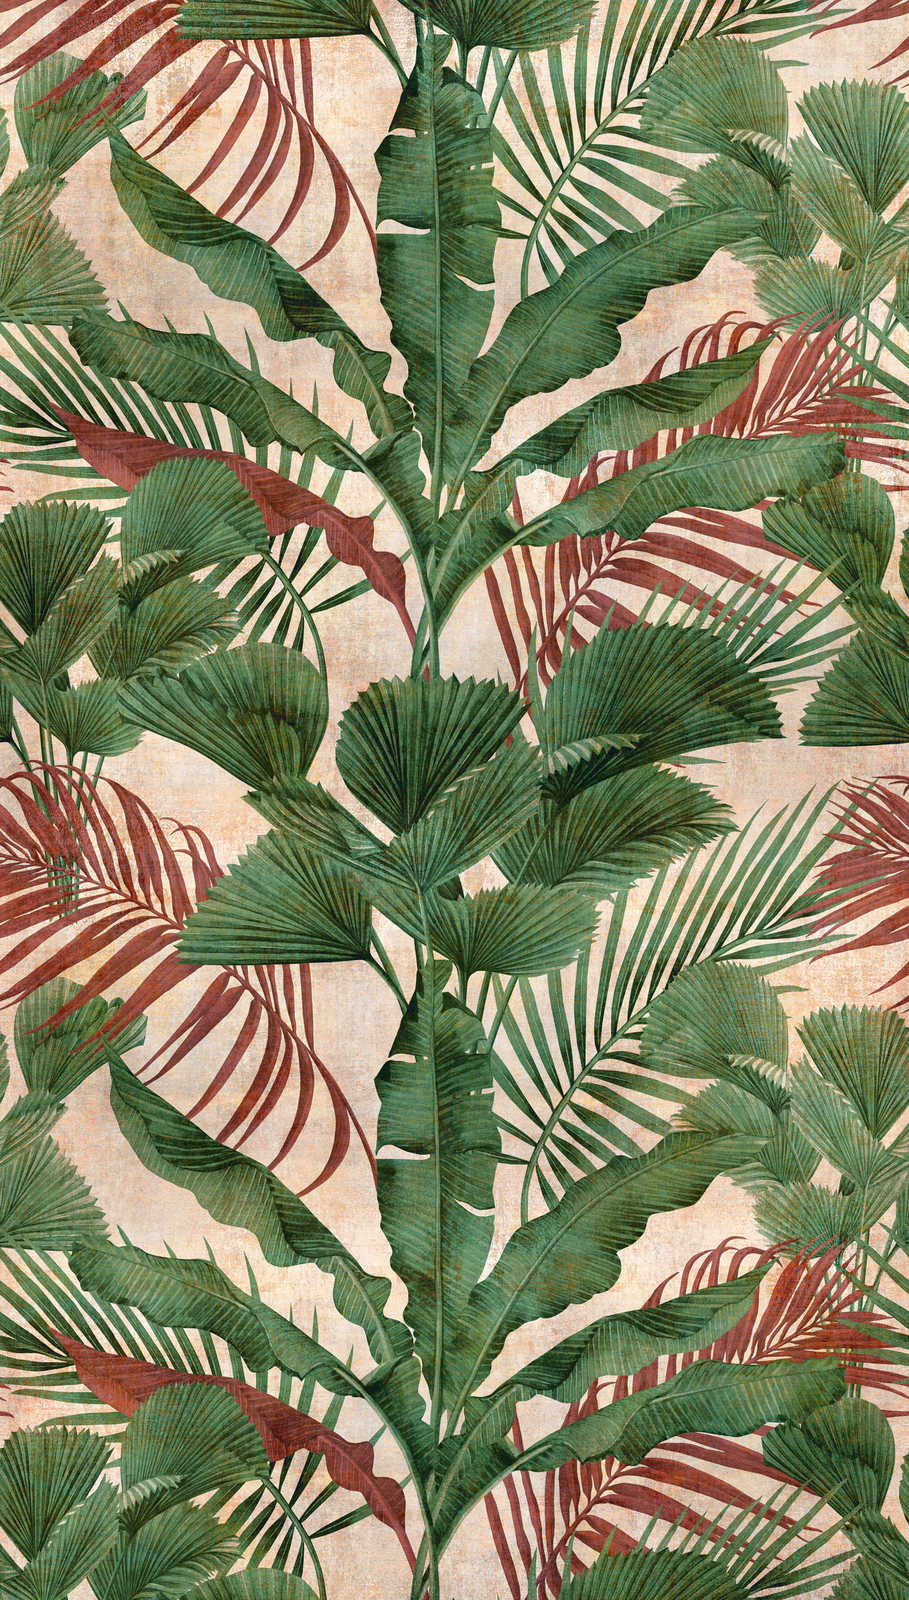             Carta da parati Jungle con piante tropicali - verde, beige, rosso
        